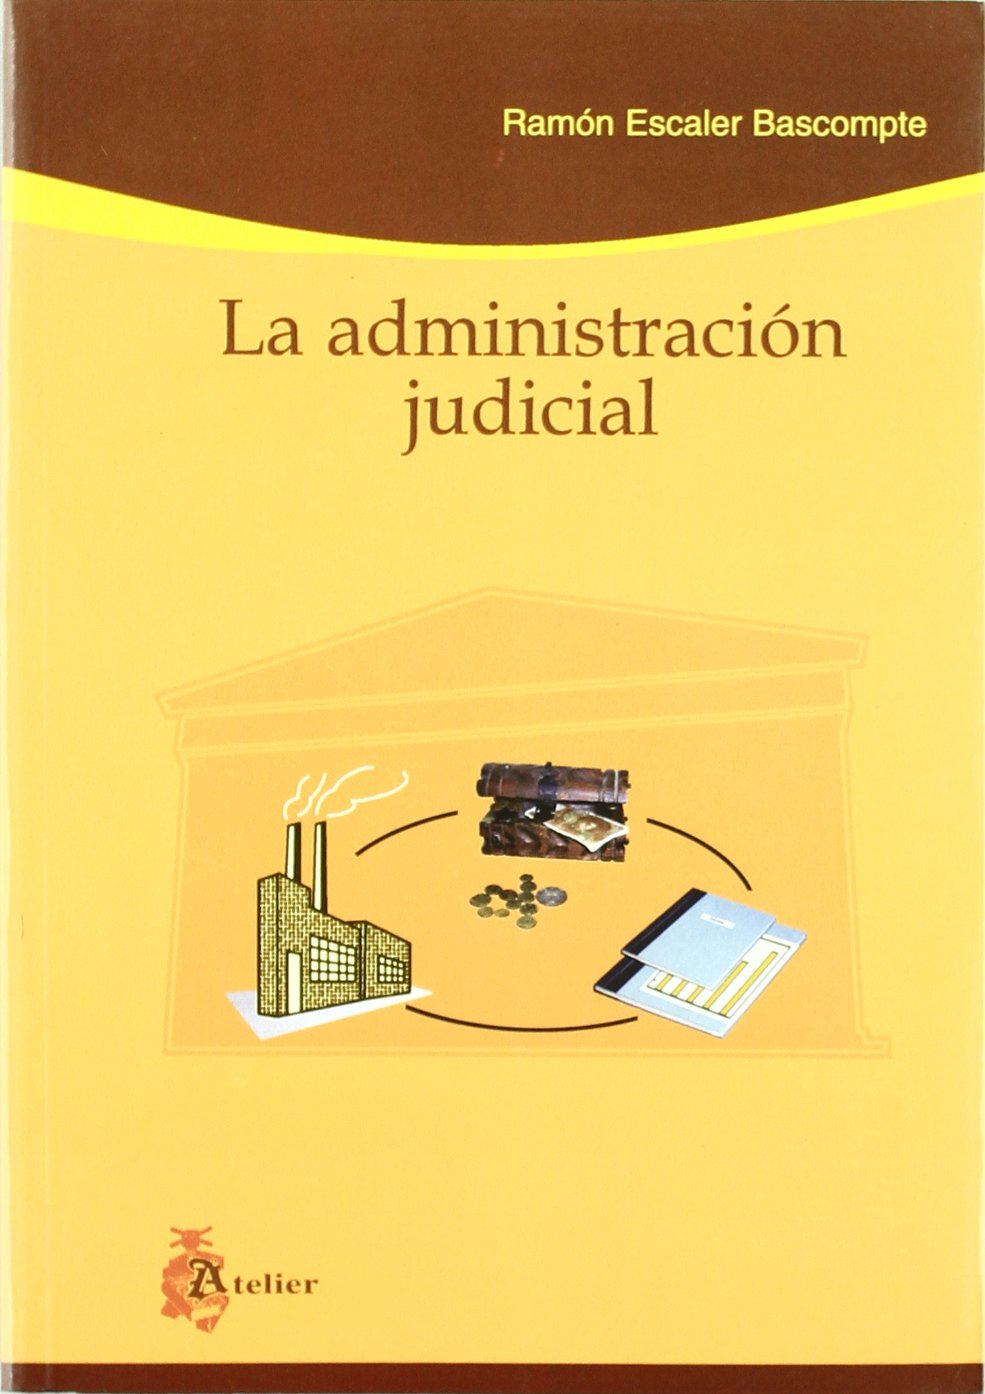 La Administración judicial